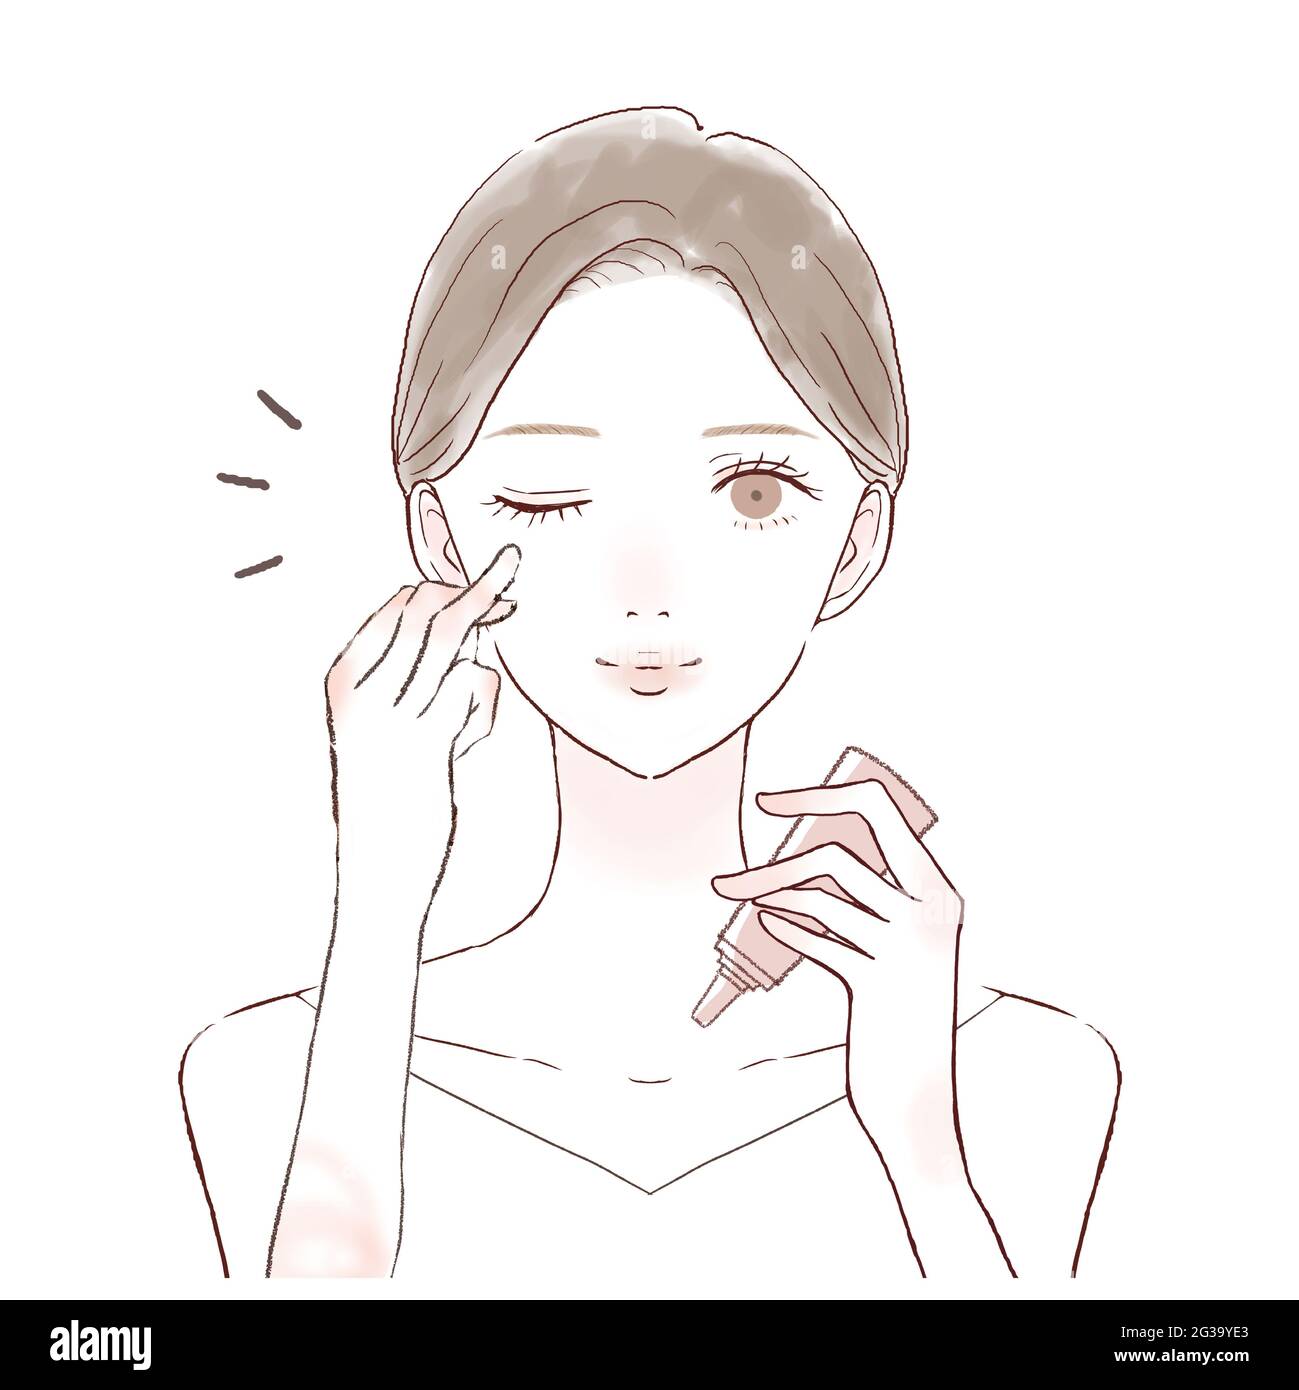 Woman applying face cream illustration Banque de photographies et